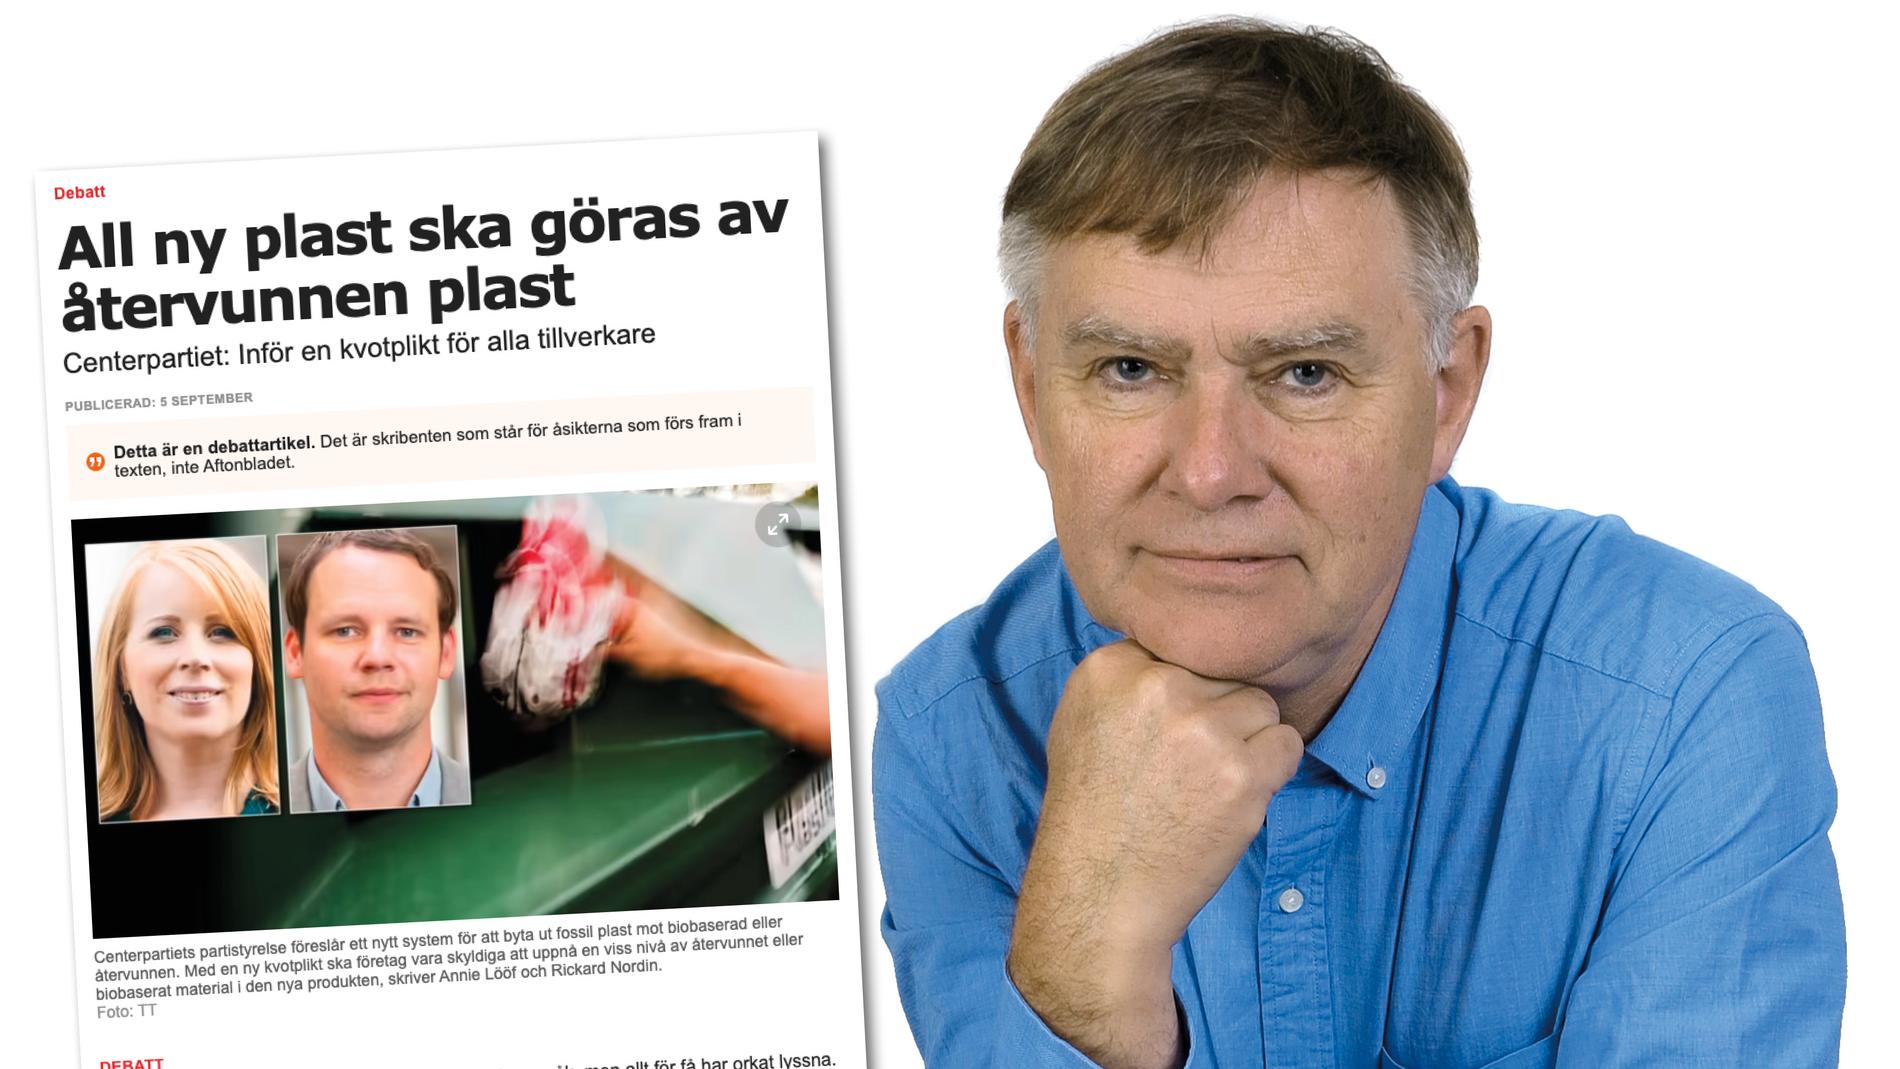 Centerpartiets förslag visar att man inte på något sätt är i fas med vad som svensk plastindustri arbetar med och än mindre har förståelse för plastens roll i ett cirkulärt samhälle. Replik från Lennart Johansson, Svensk plastindustriförening.